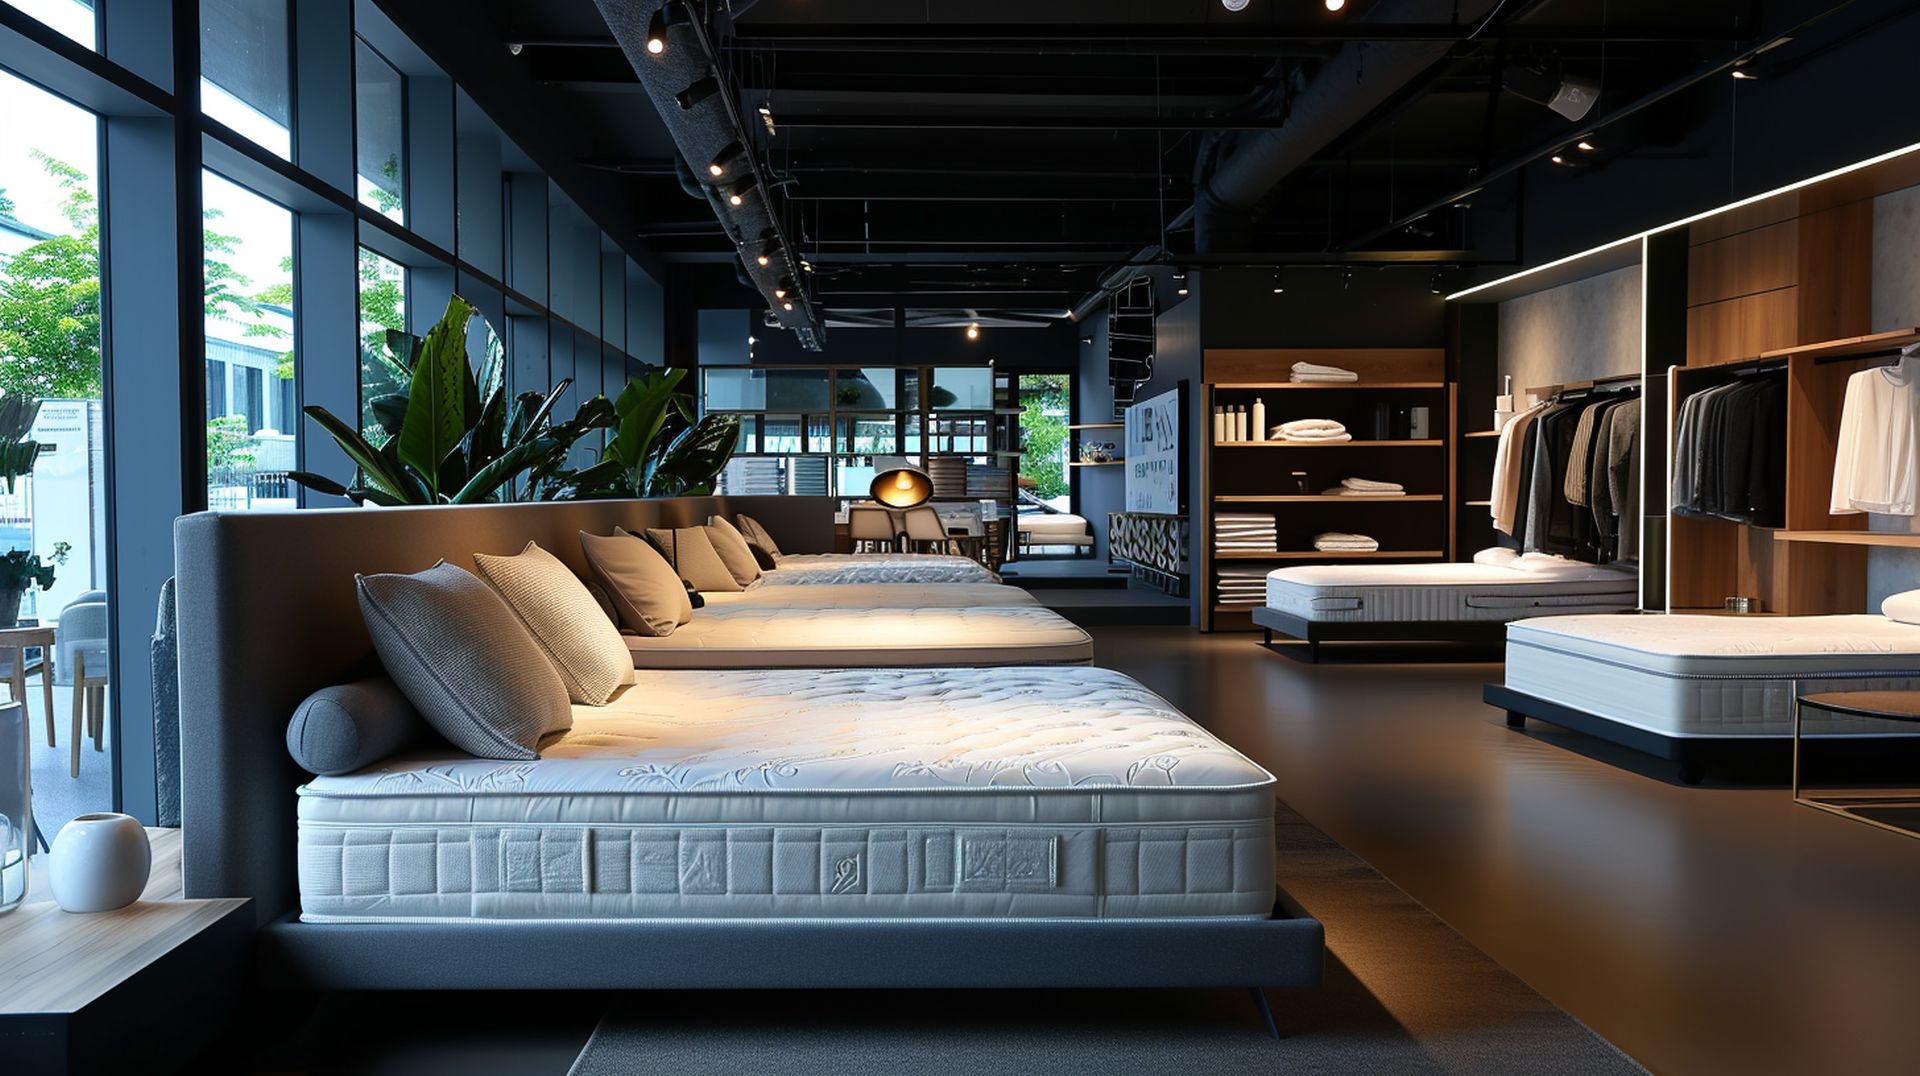 mattress stores newmattressland 012